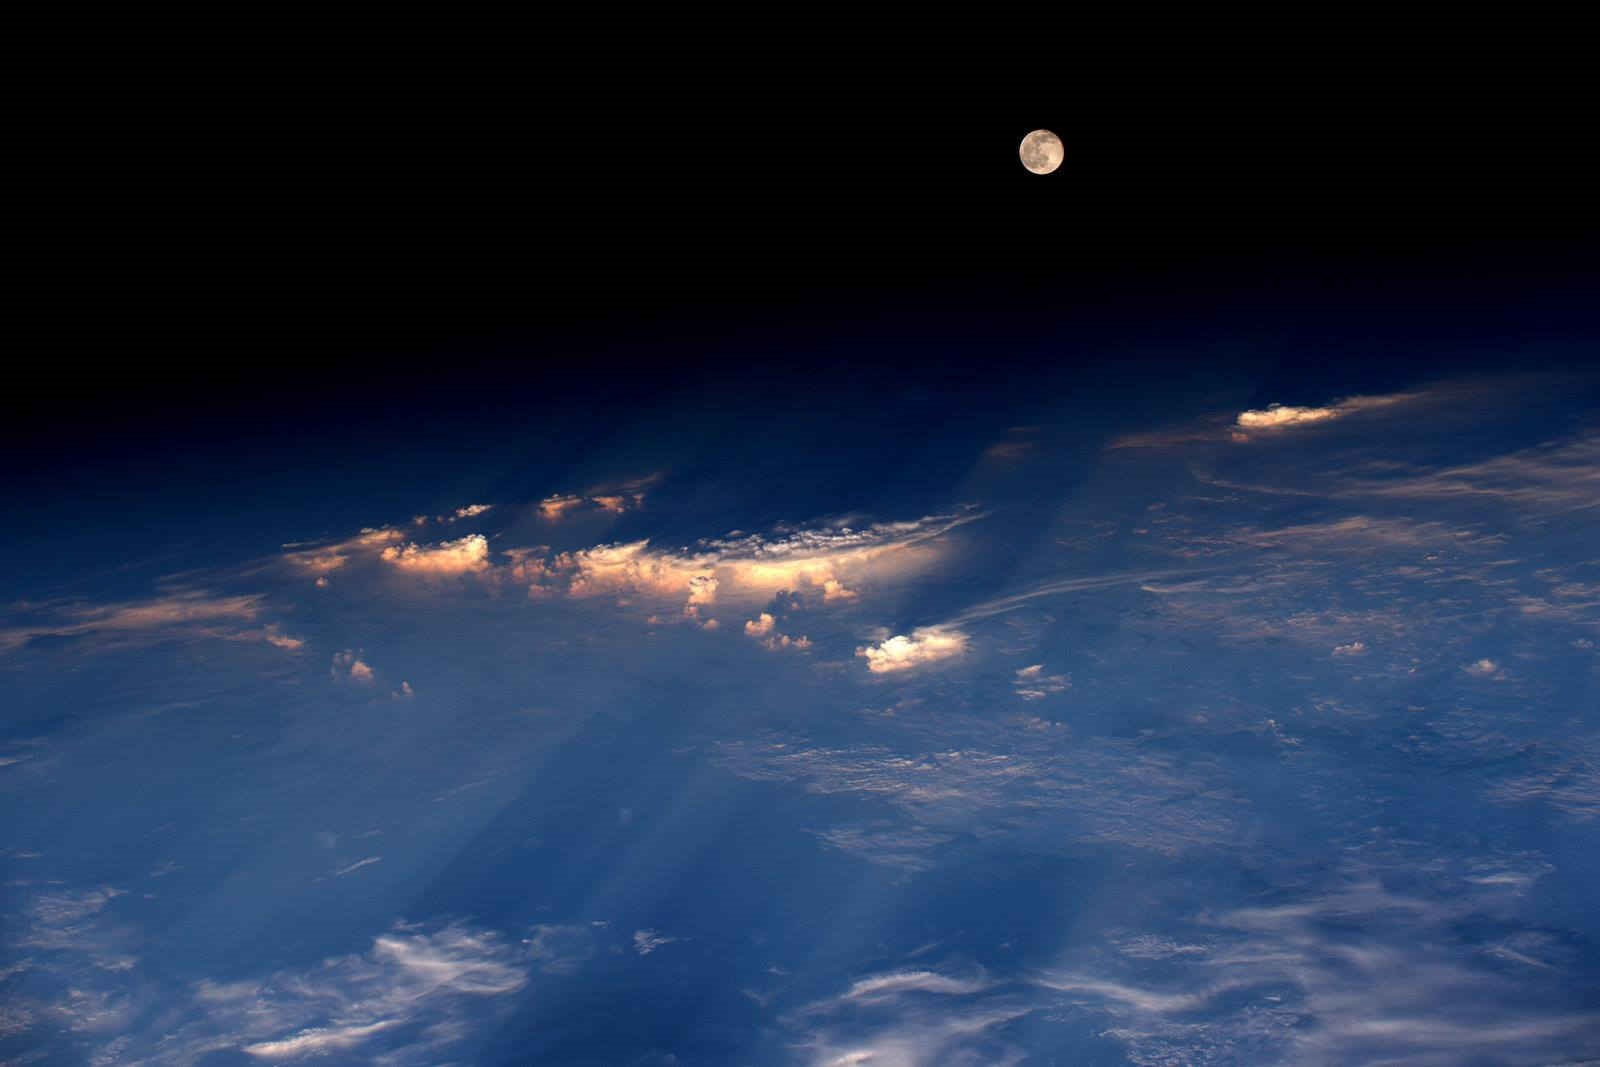 הירח מתחנת החלל הבינלאומית, במעופה מעל סין | Jeff Williams/NASA